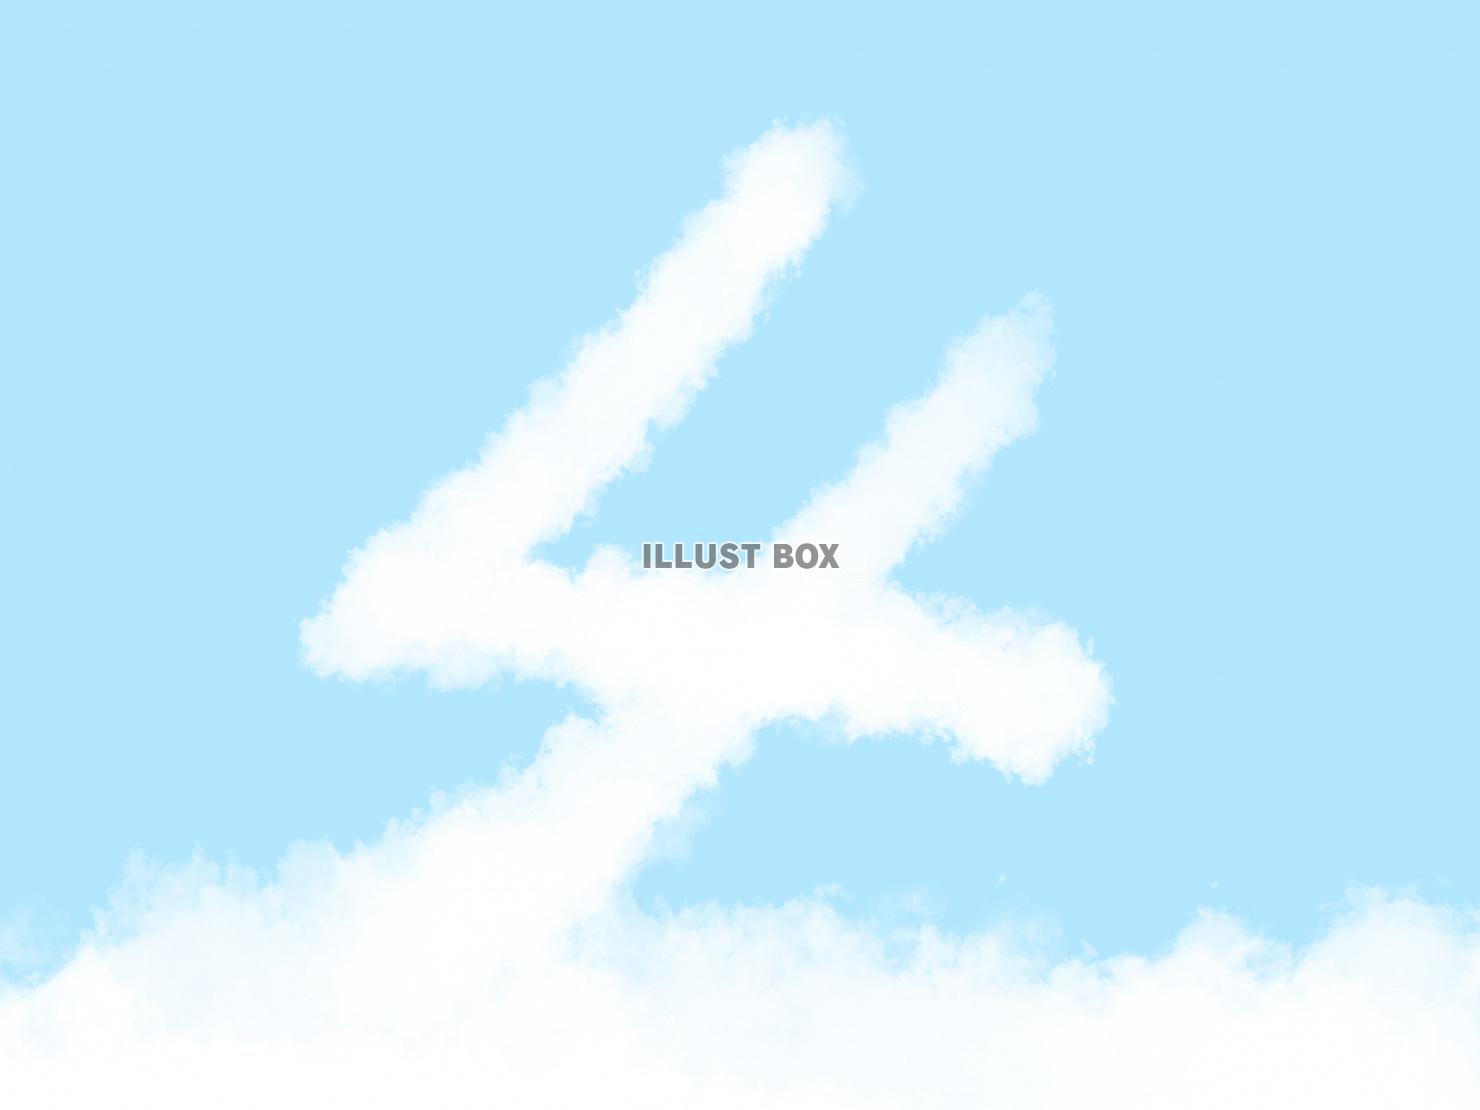 無料イラスト 絵本風の可愛い雲の数字 4 の文字入りの空